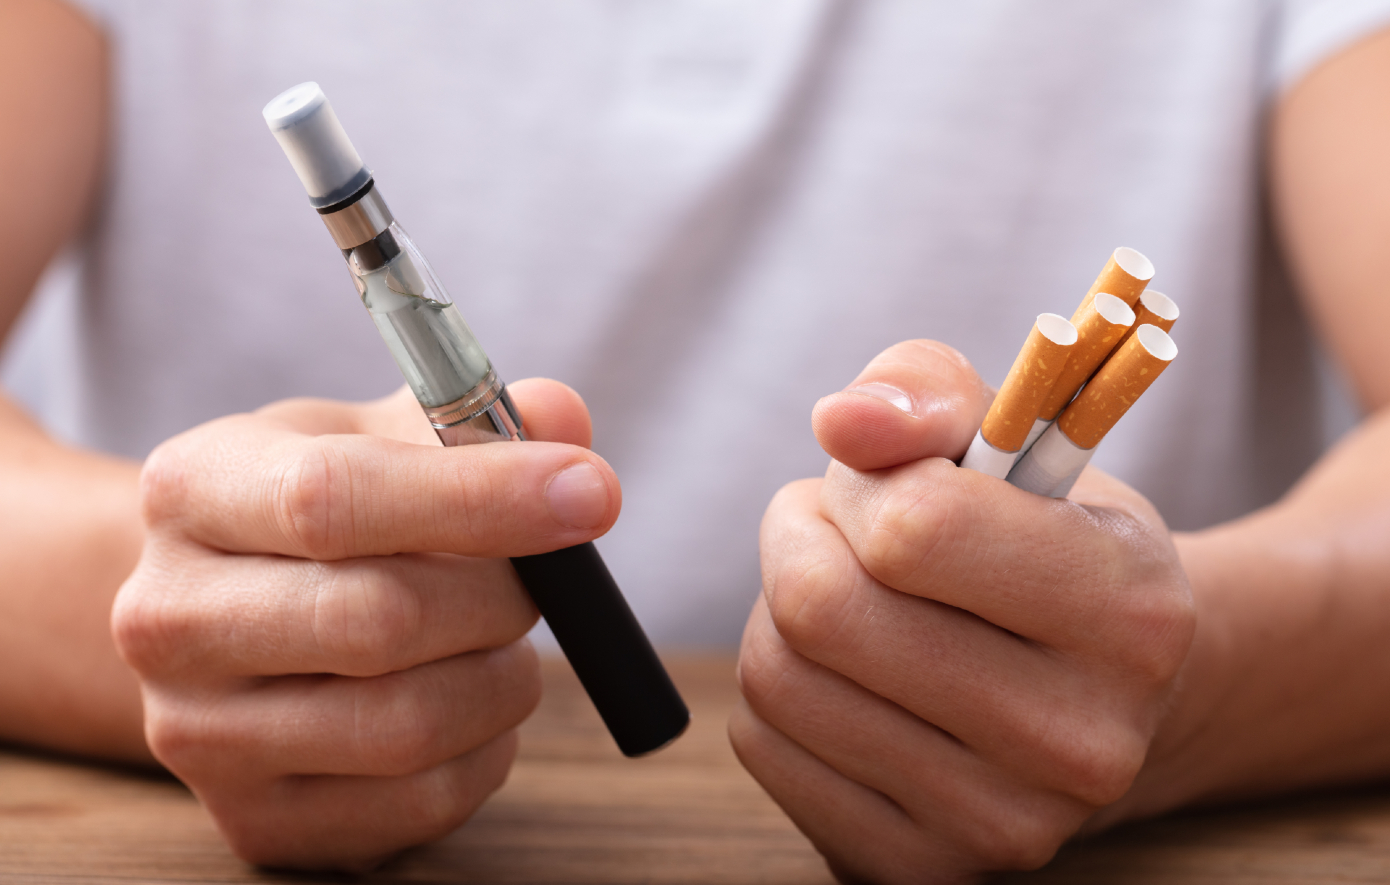 Τι είναι πιο επιβλαβές για την υγεία σας, το κάπνισμα ή το άτμισμα;